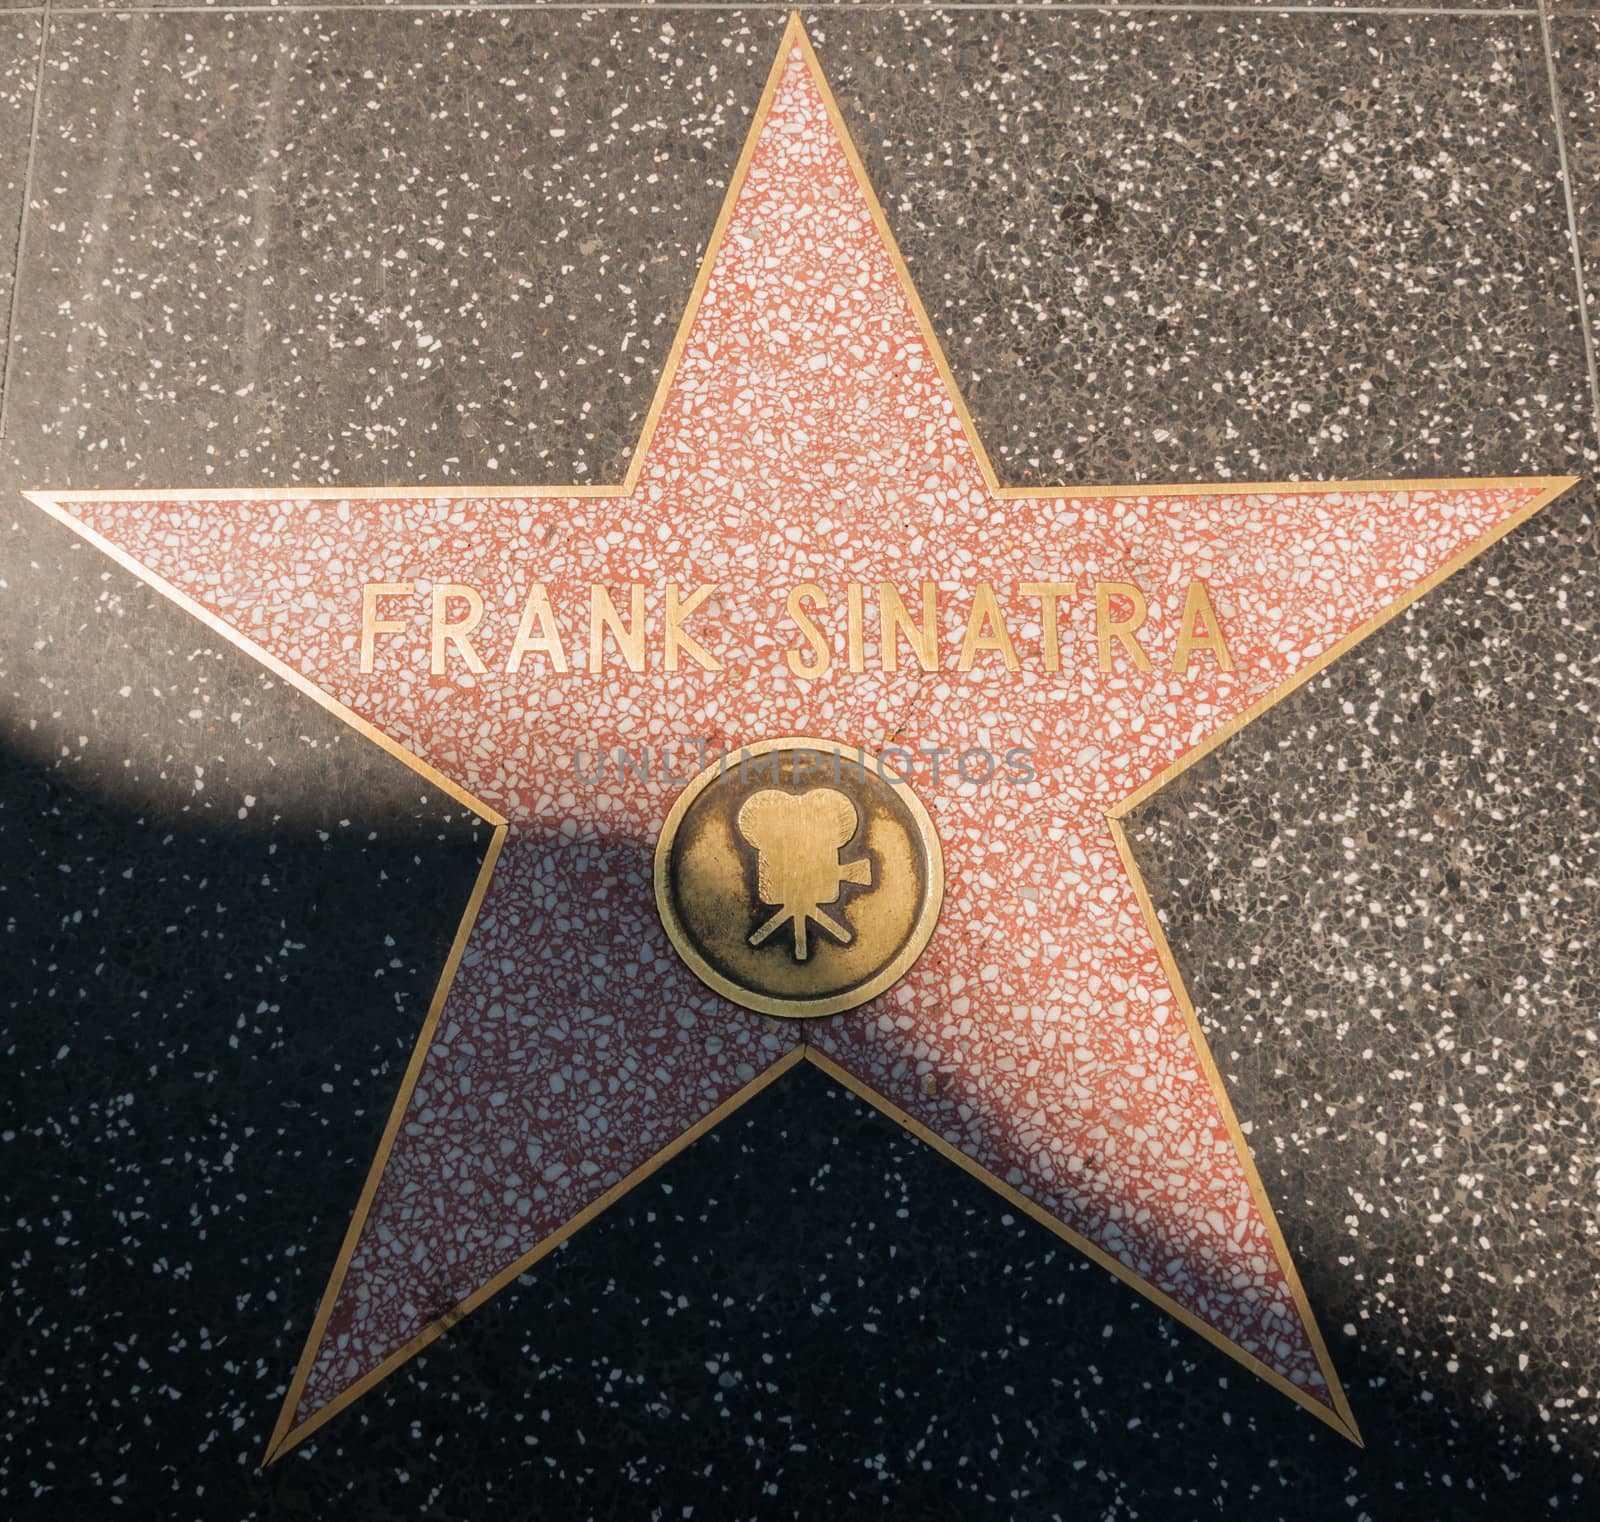 Frank Sinatra Hollywood Star by weltreisendertj